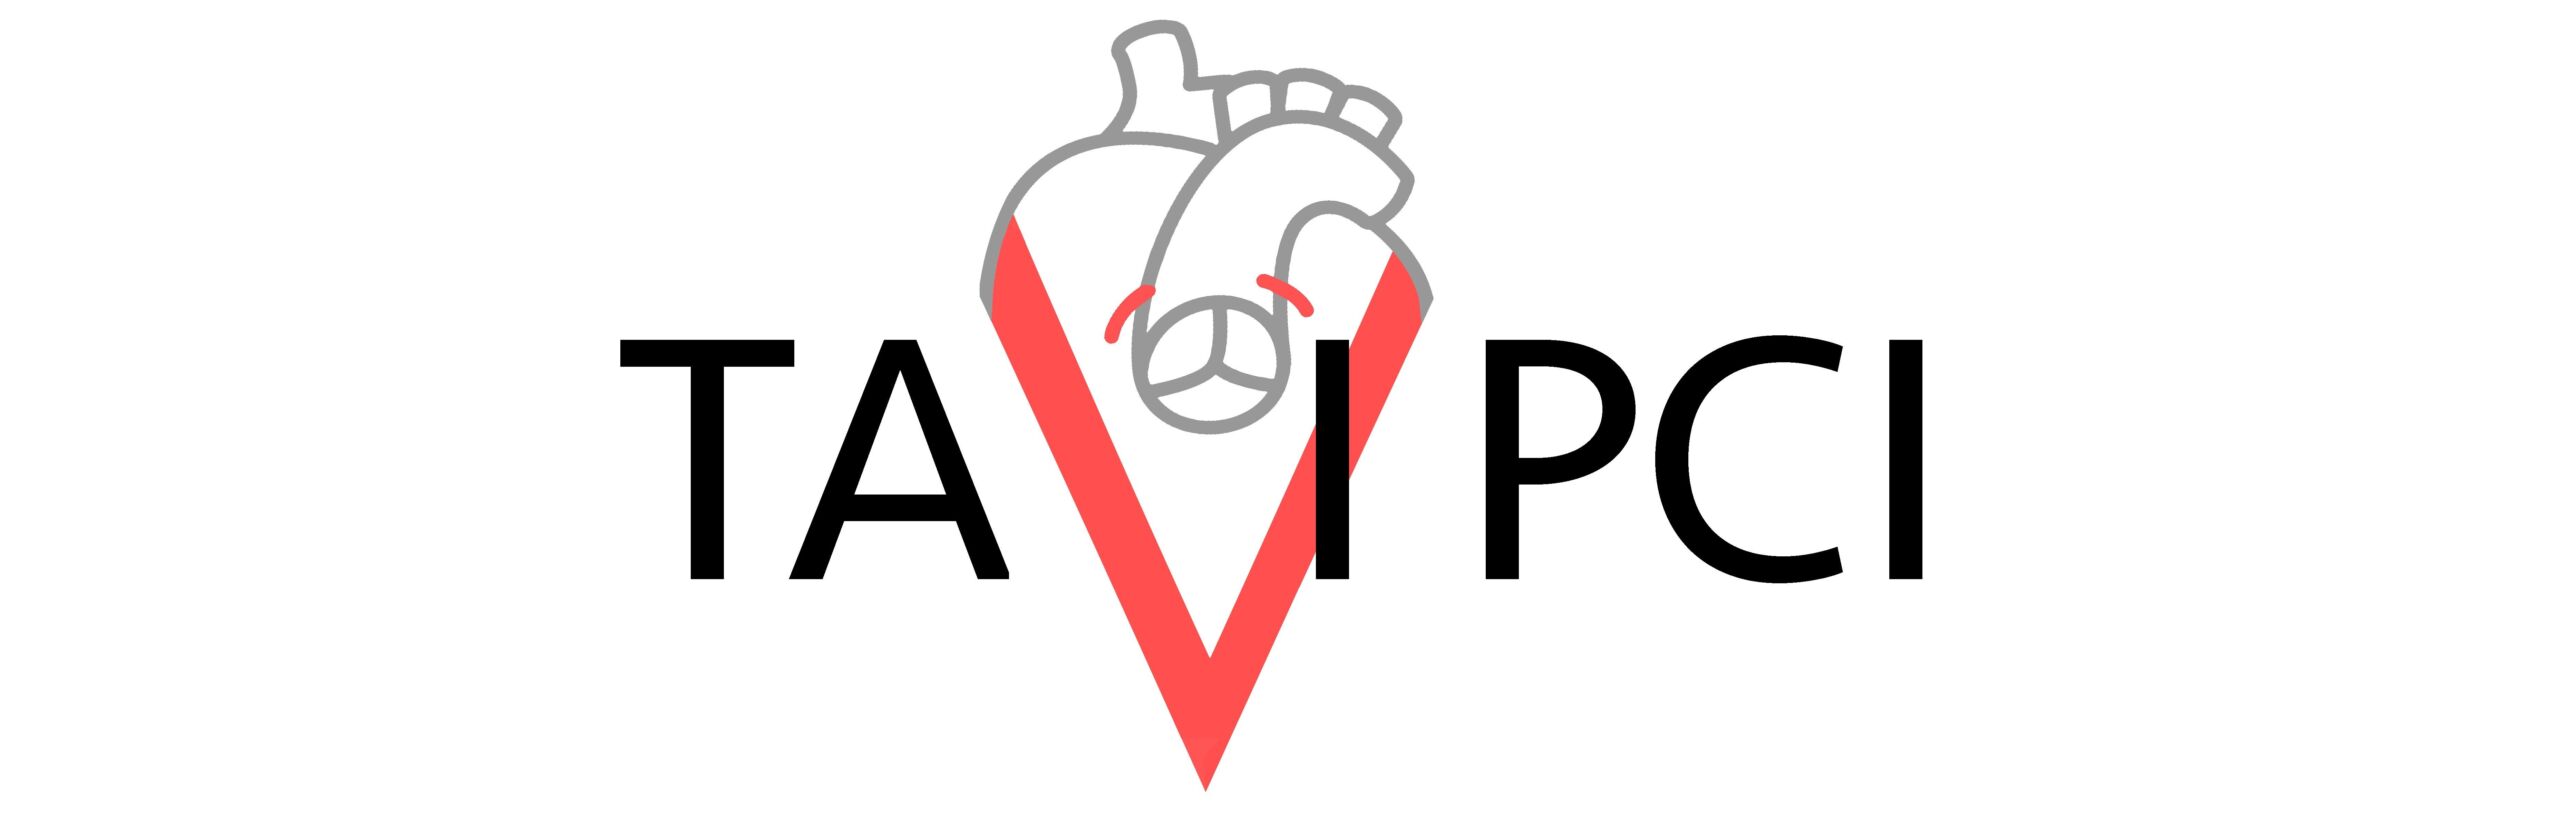 Tavi PCI Logo